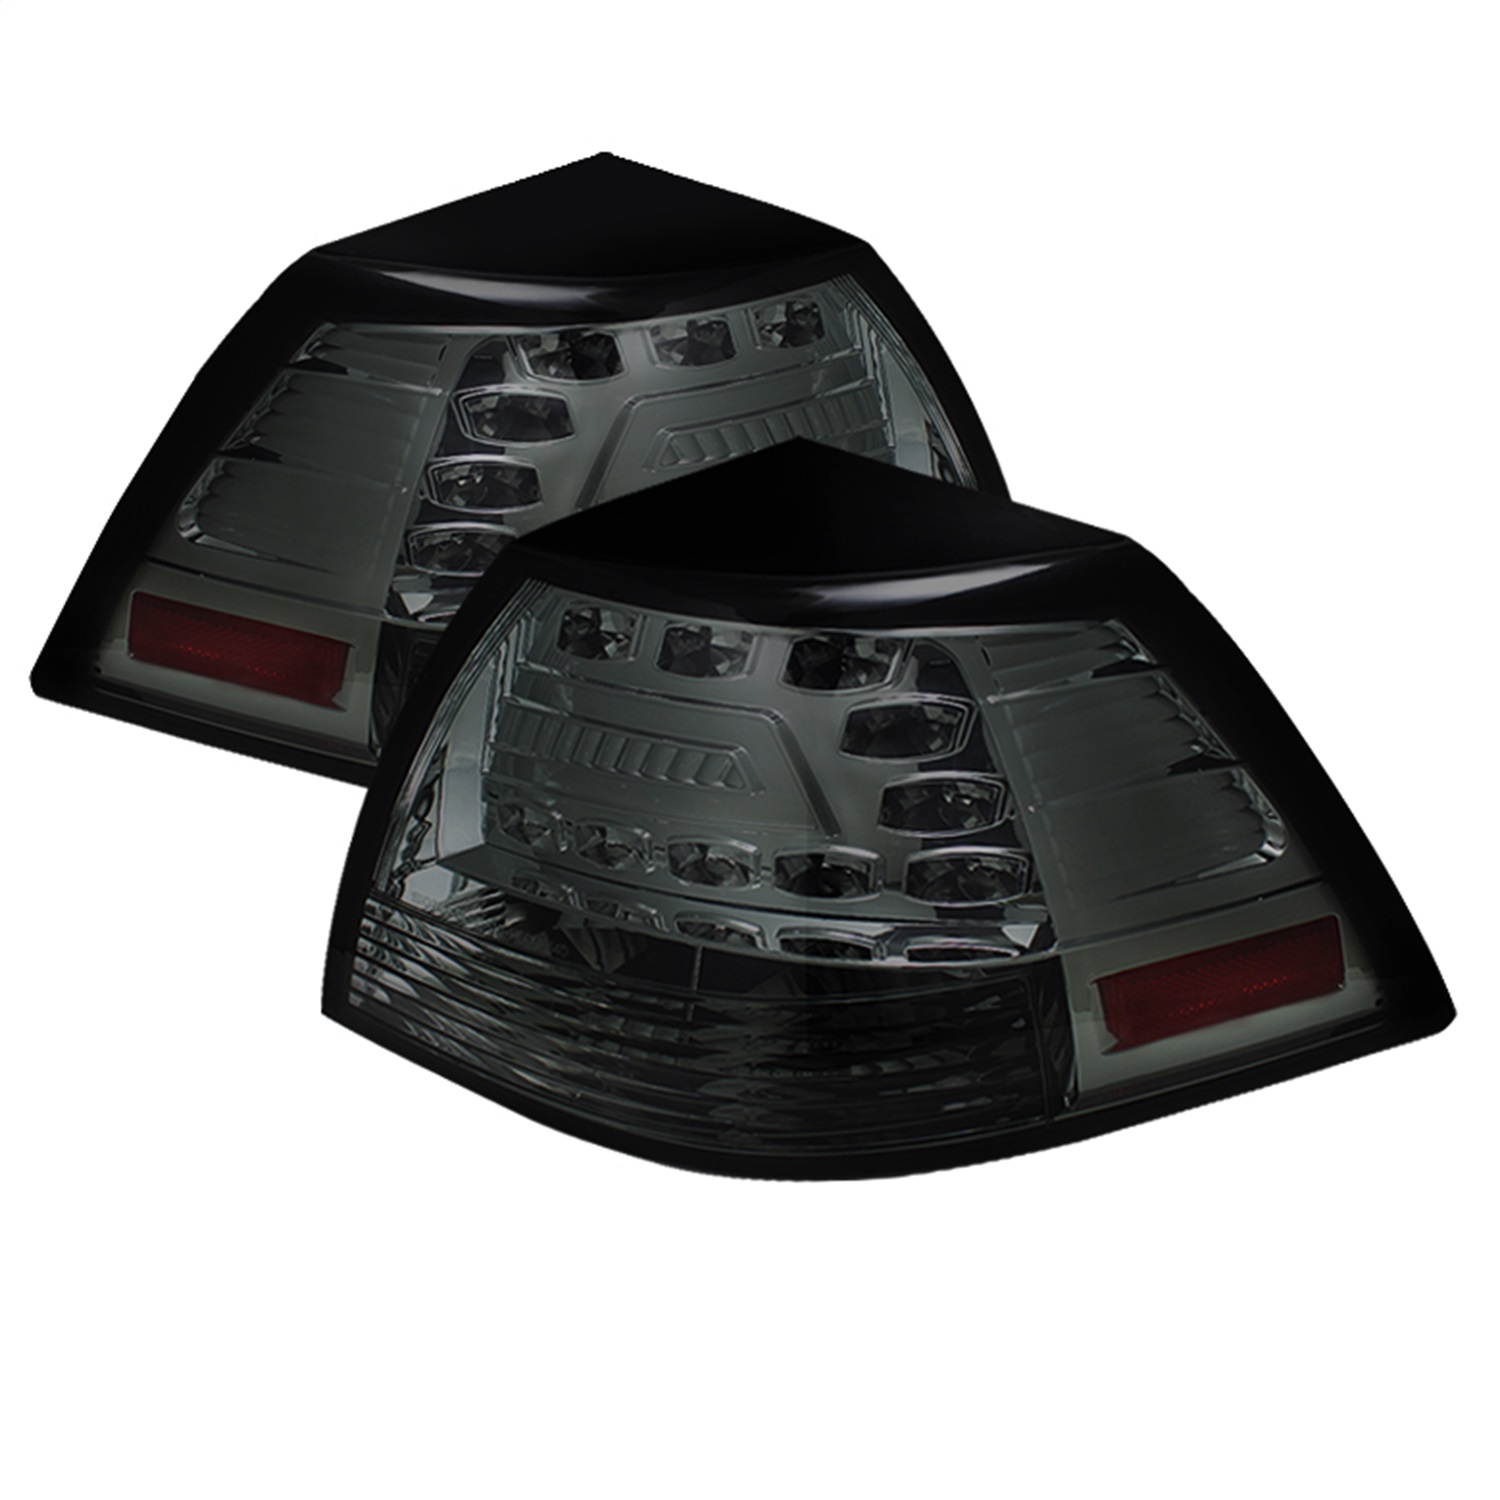 Spyder Auto 5033642 LED Tail Lights Fits 08-09 G8